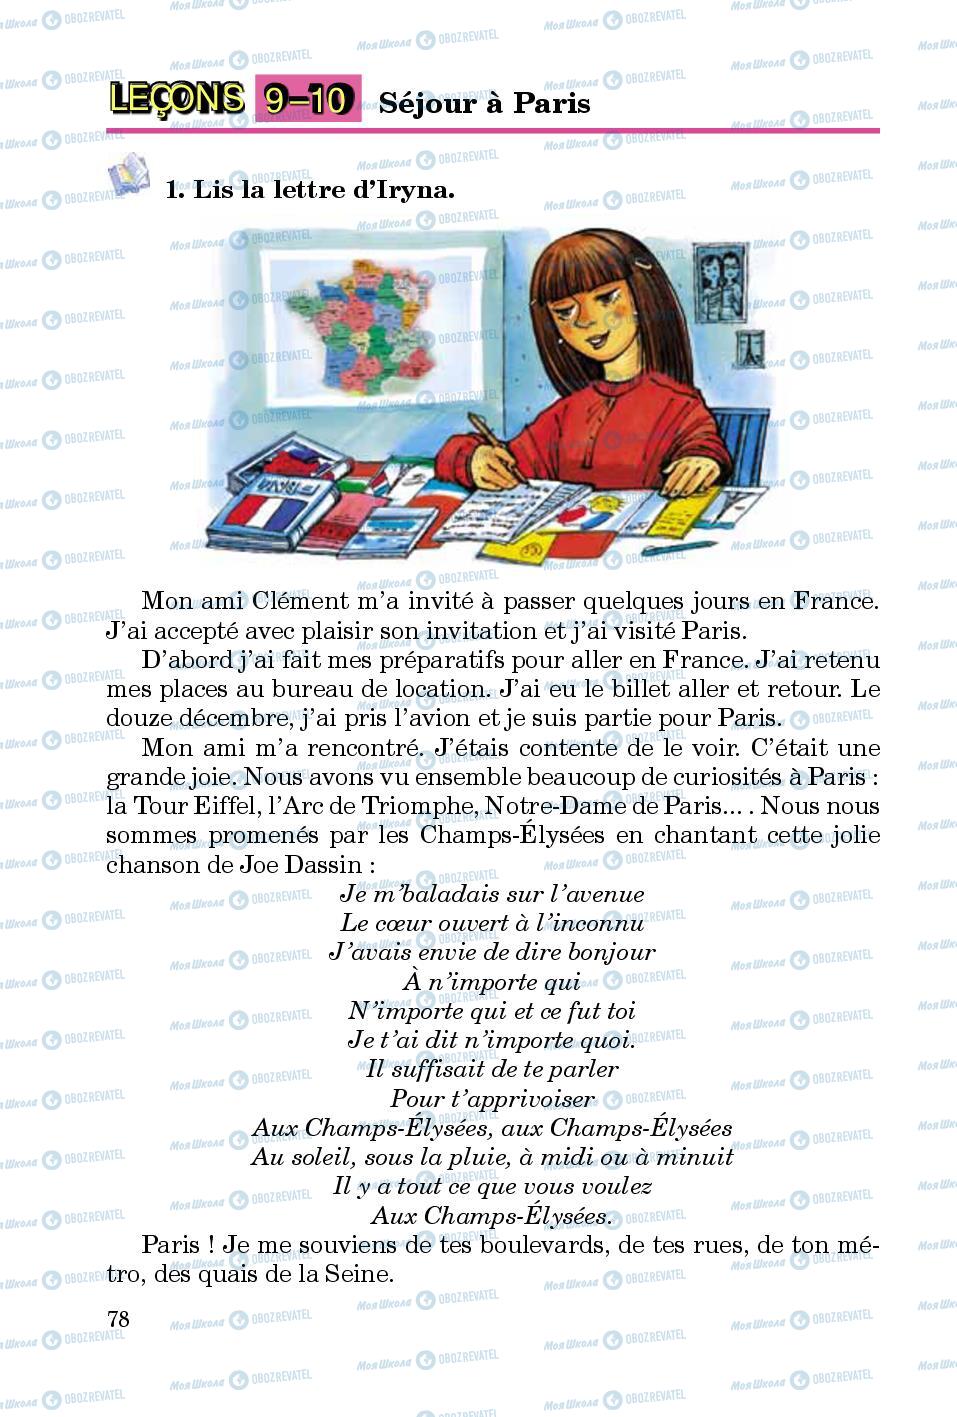 Підручники Французька мова 5 клас сторінка 78